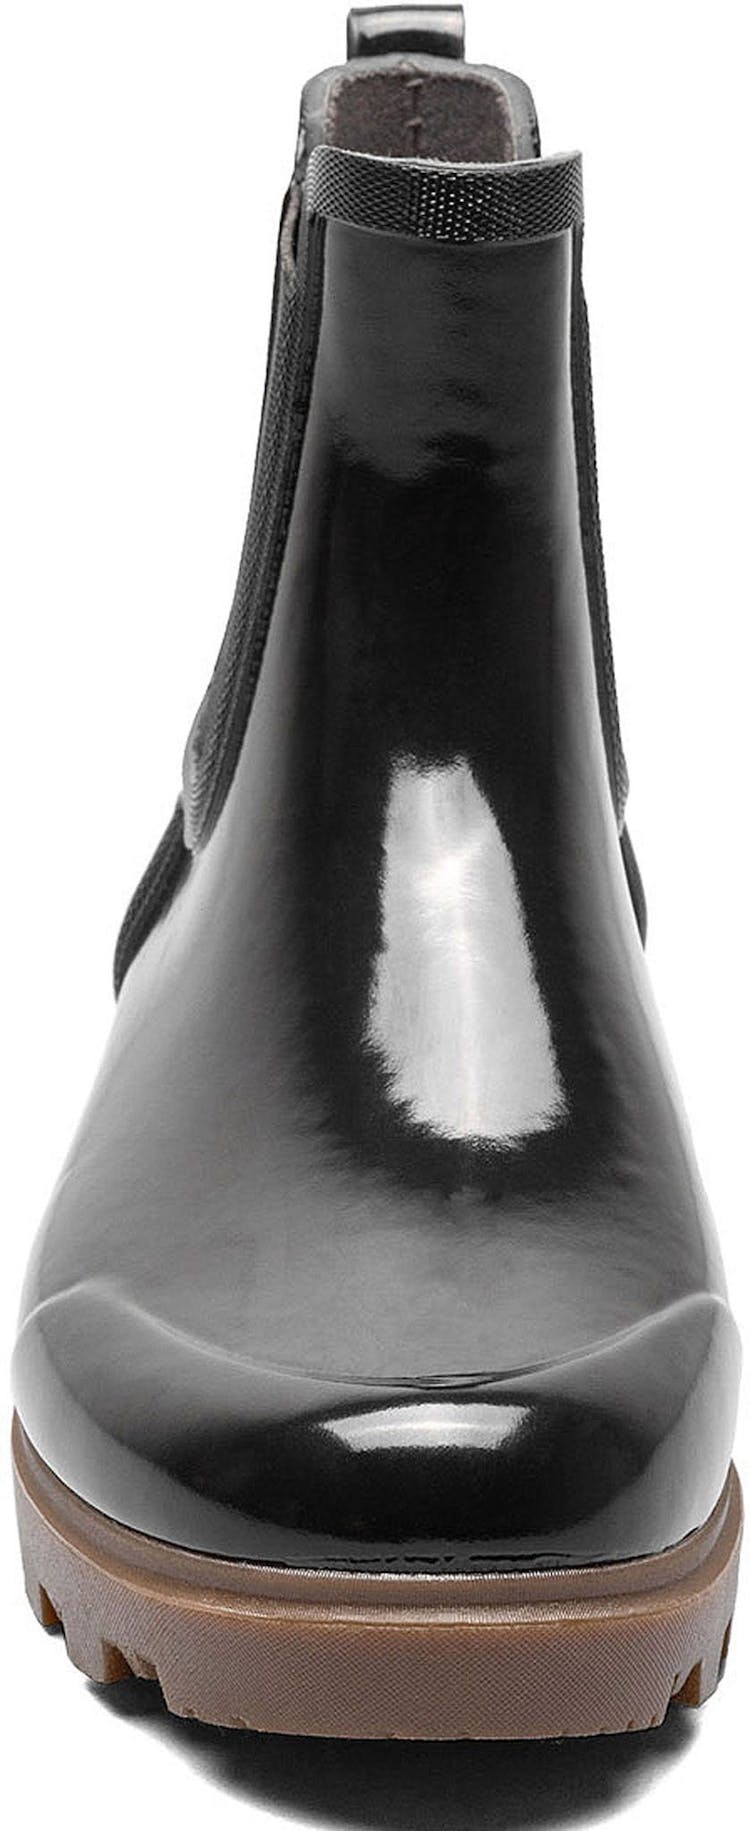 Numéro de l'image de la galerie de produits 5 pour le produit Bottes de pluie Chelsea Shine Holly - Femme